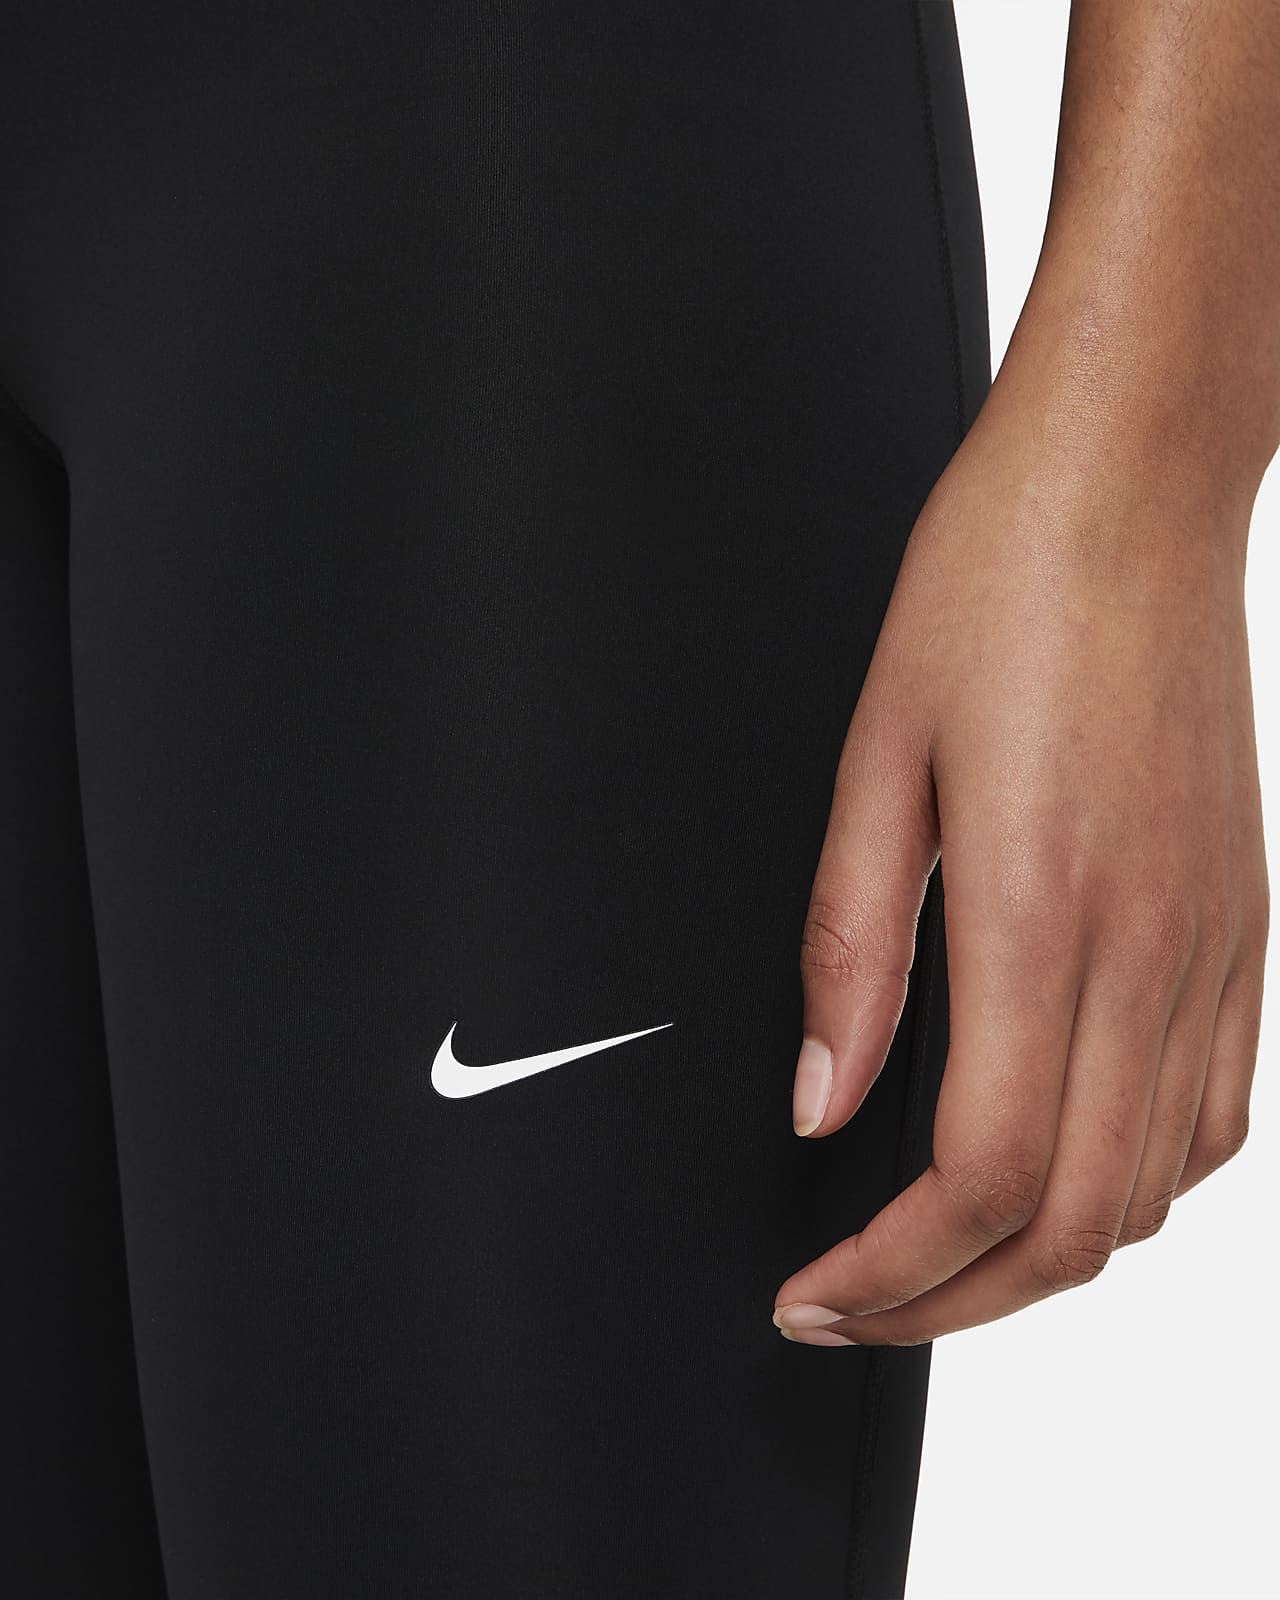 Buy Nike High-Waisted 7/8 - Women's Leggings online